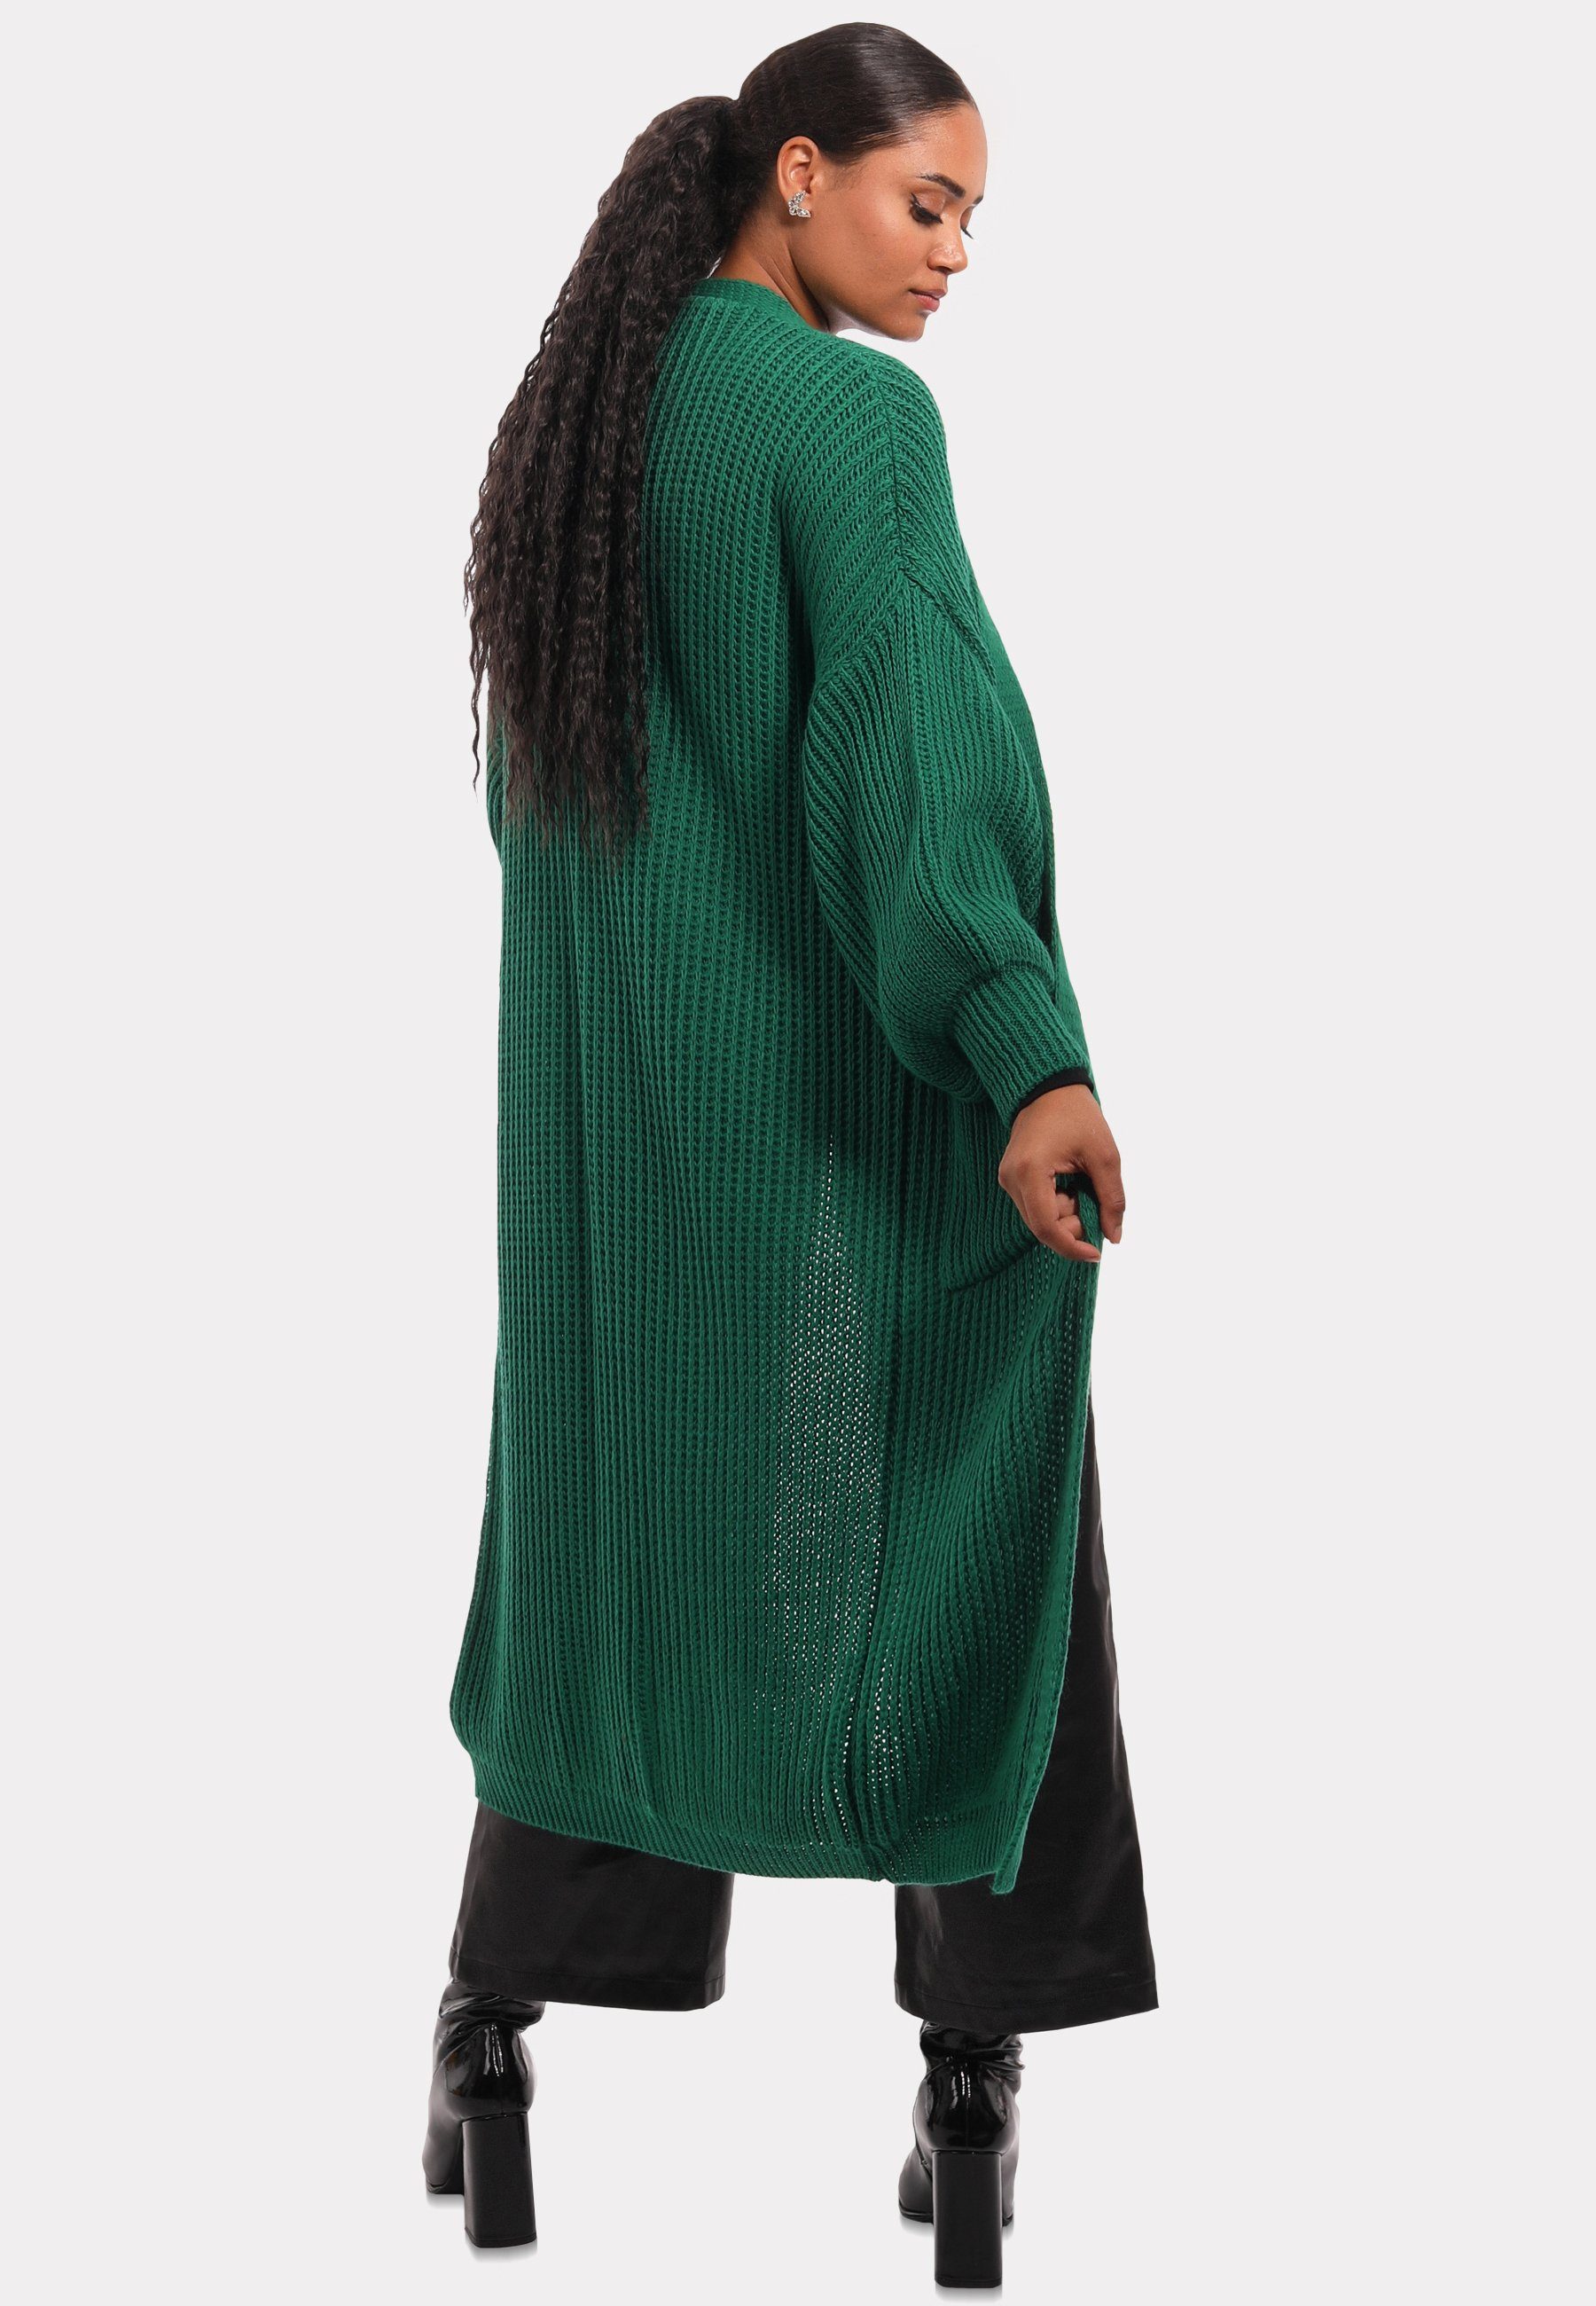 YC Fashion Taschen Strickjacke Cardigan mit aufgesetzten Unifarbe, in Verschlusslos Basic grün Style & Cardigan